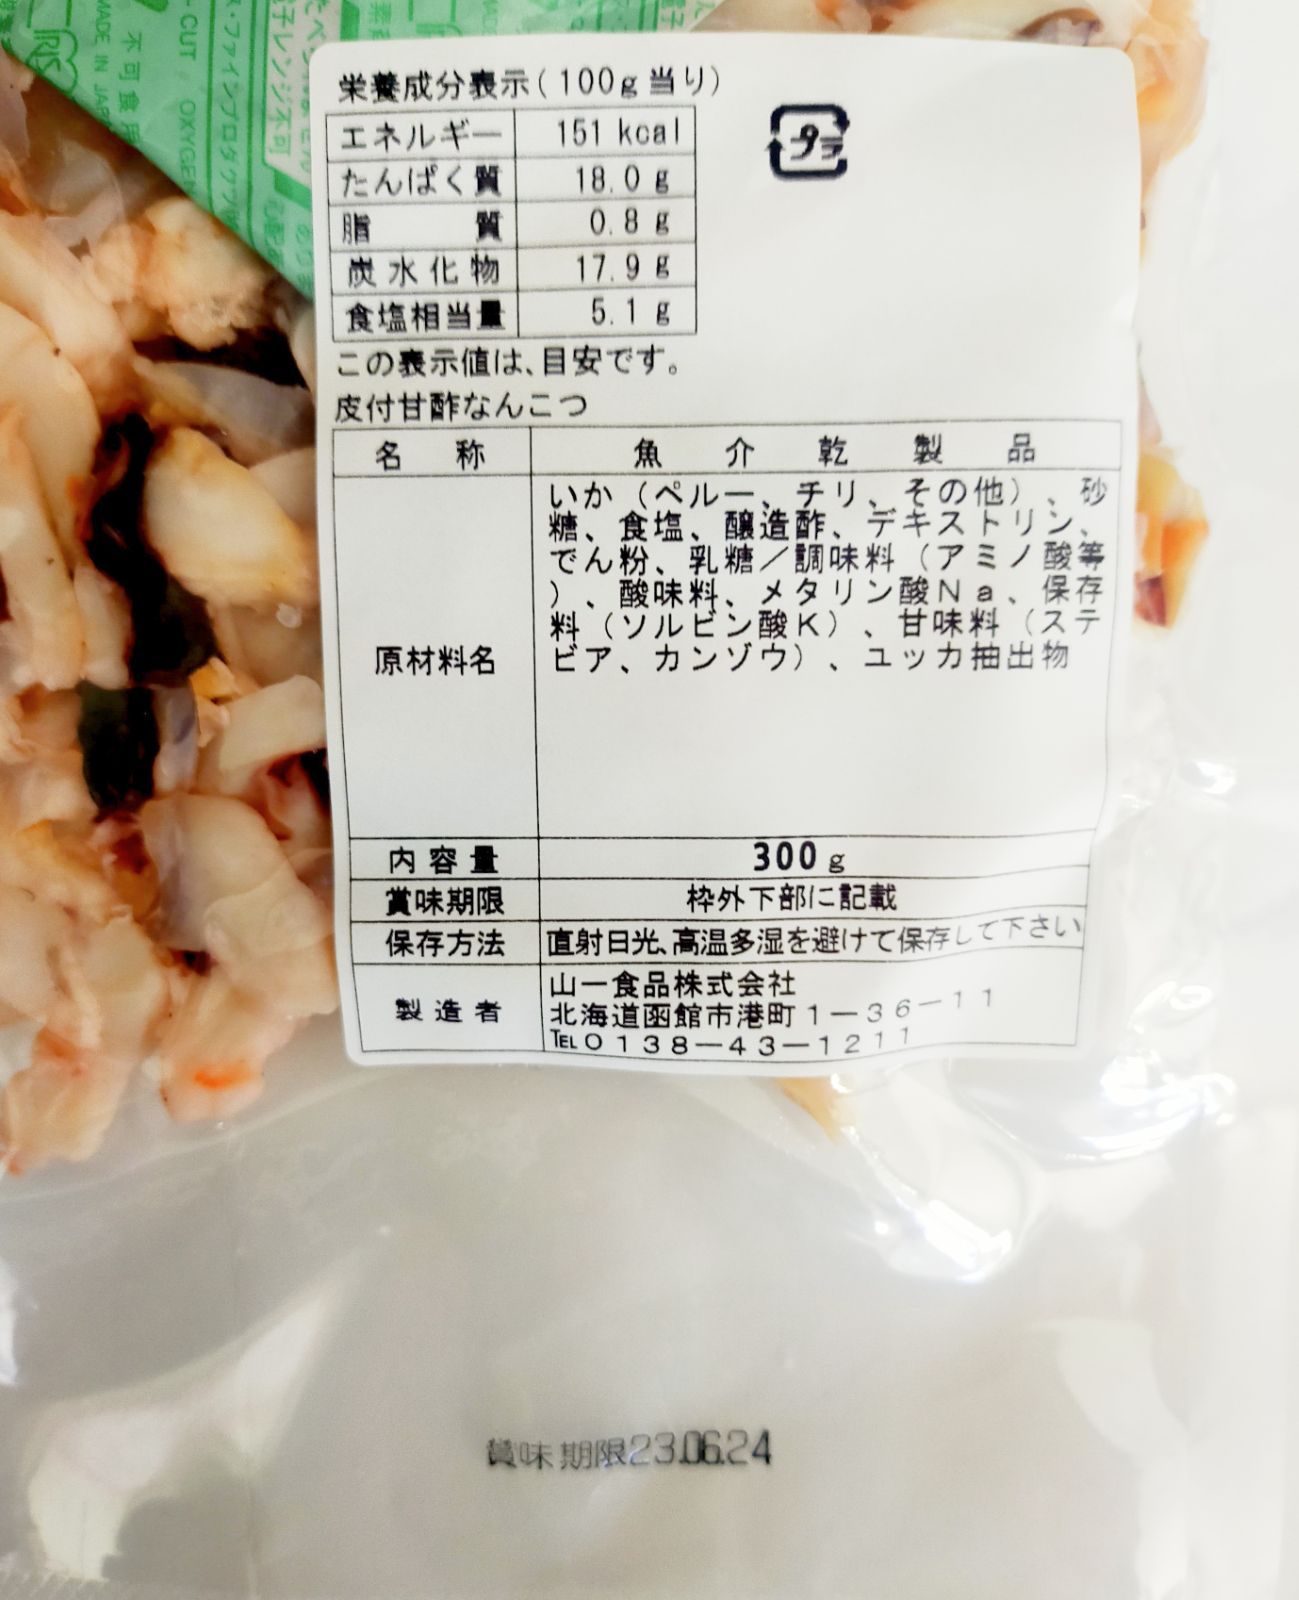 69%OFF!】 ♢函館 山一食品より直送♢ボリュームたっぷり 2袋で600